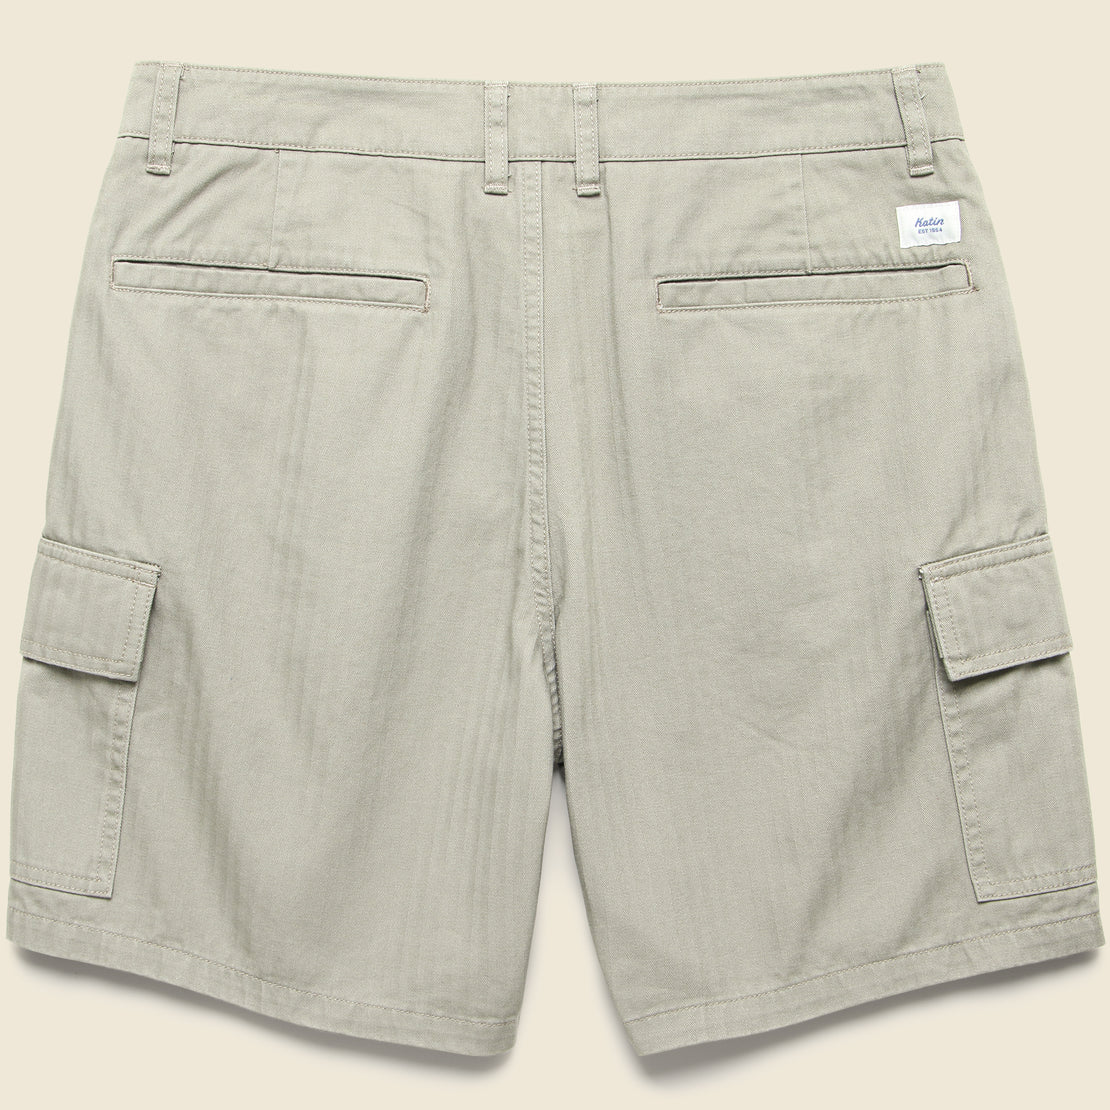 Grant Short - Warm Grey - Katin - STAG Provisions - Shorts - Solid